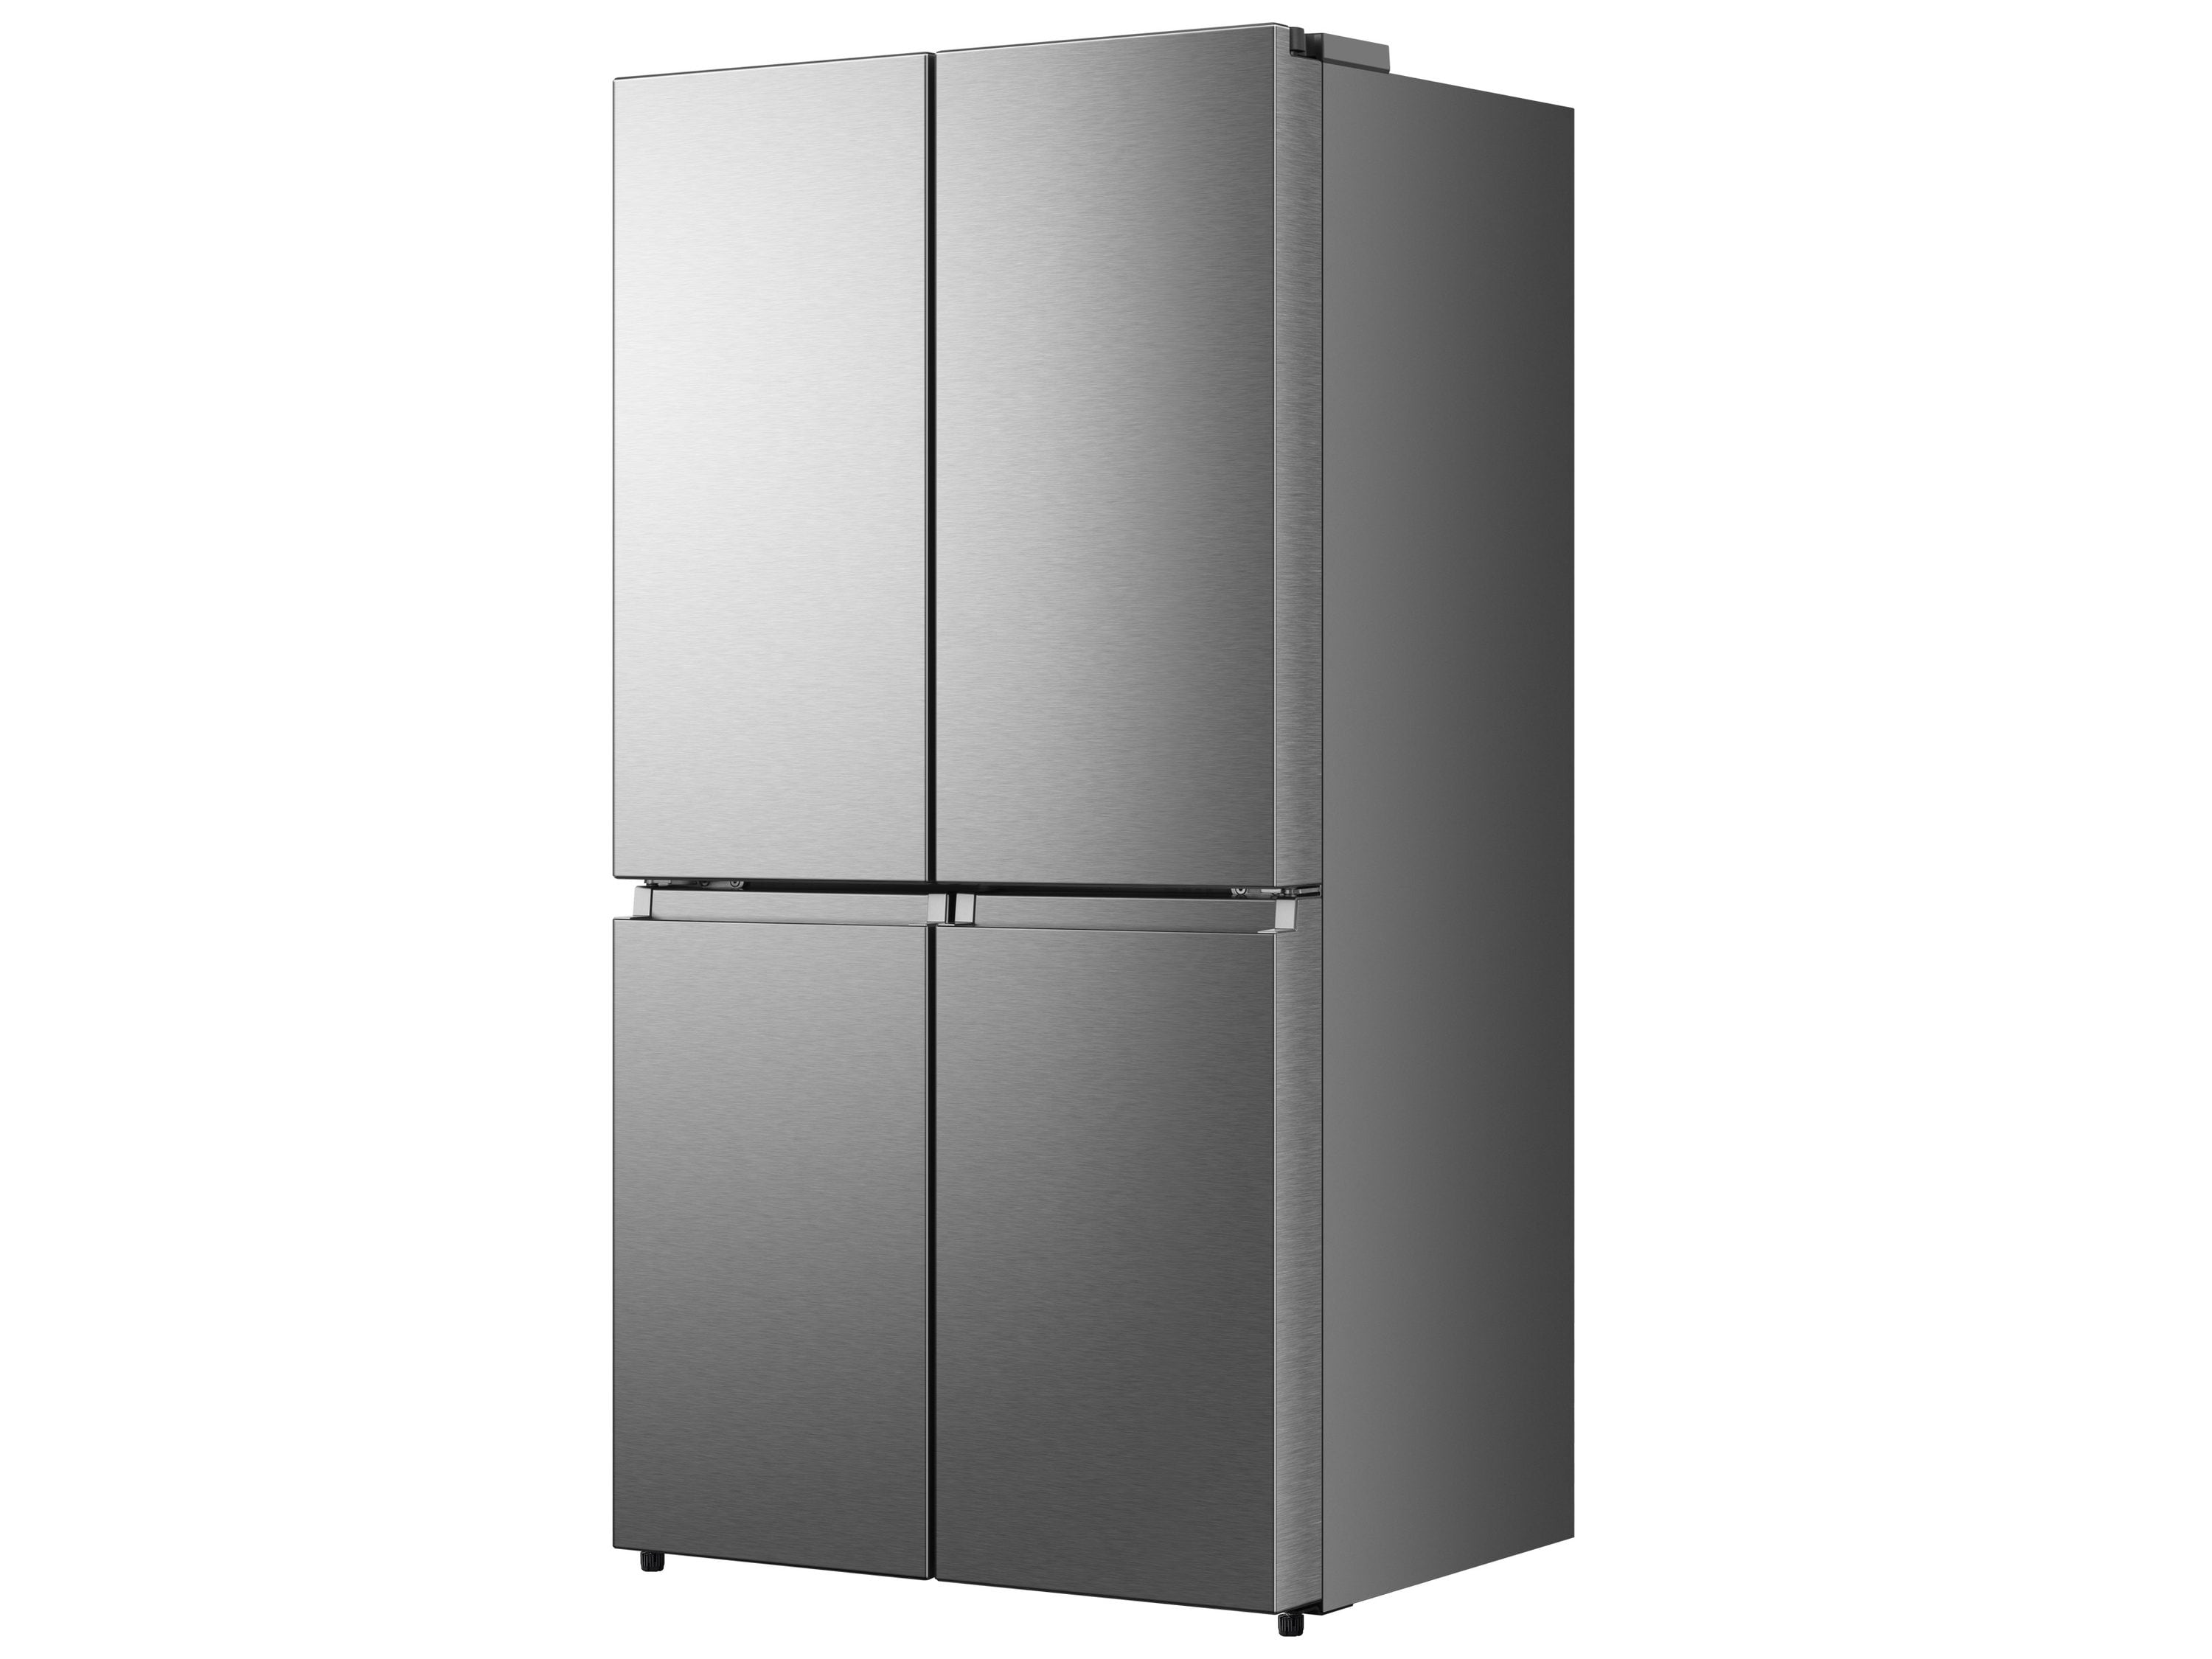 Hisense Counter-depth 21.6-cu ft 4-Door French Door Refrigerator 